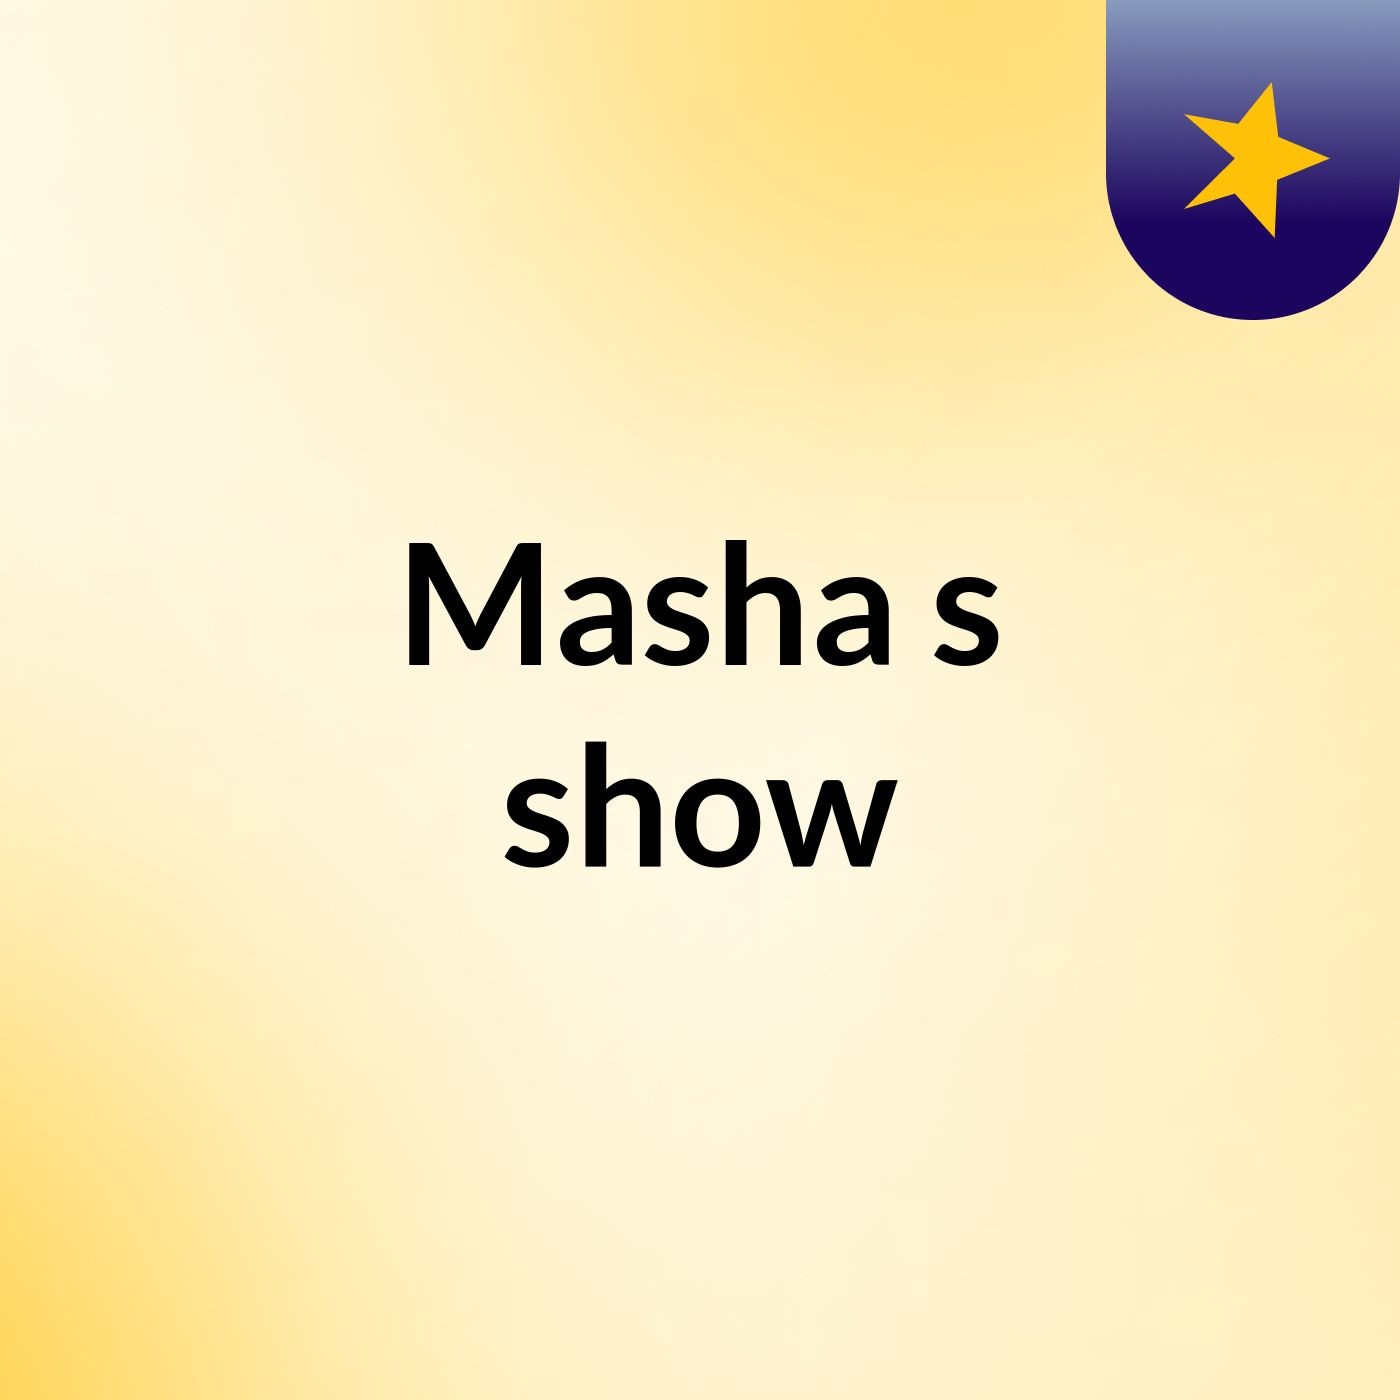 Masha's show